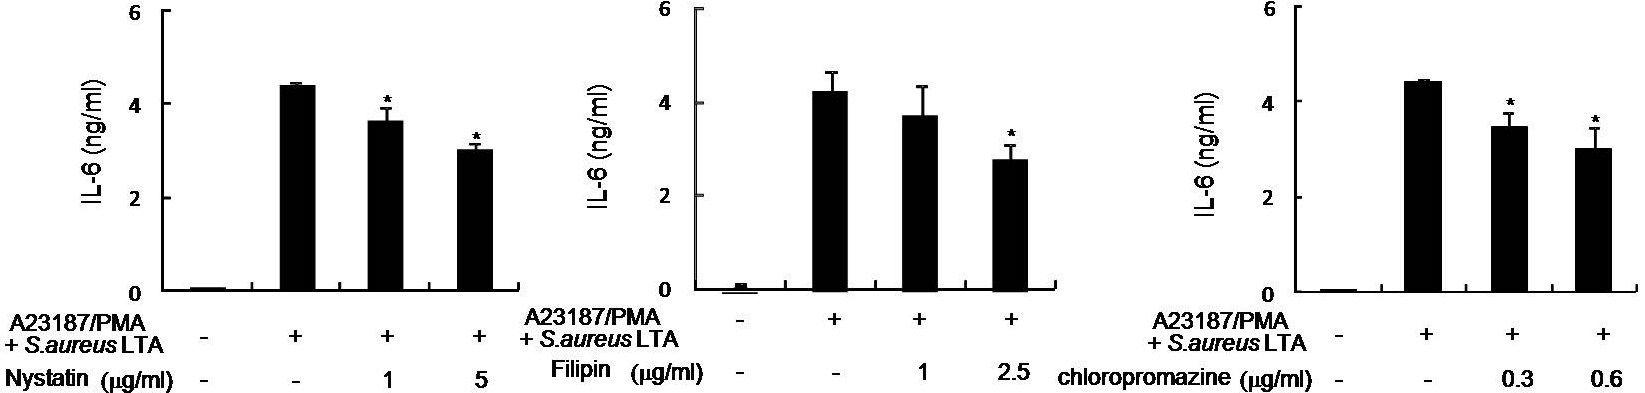 KU812세포에서 LTA와 PMA/A23187 신호전달에서의 lipid raft형성과clathrin coated pit형성의 영향 평가